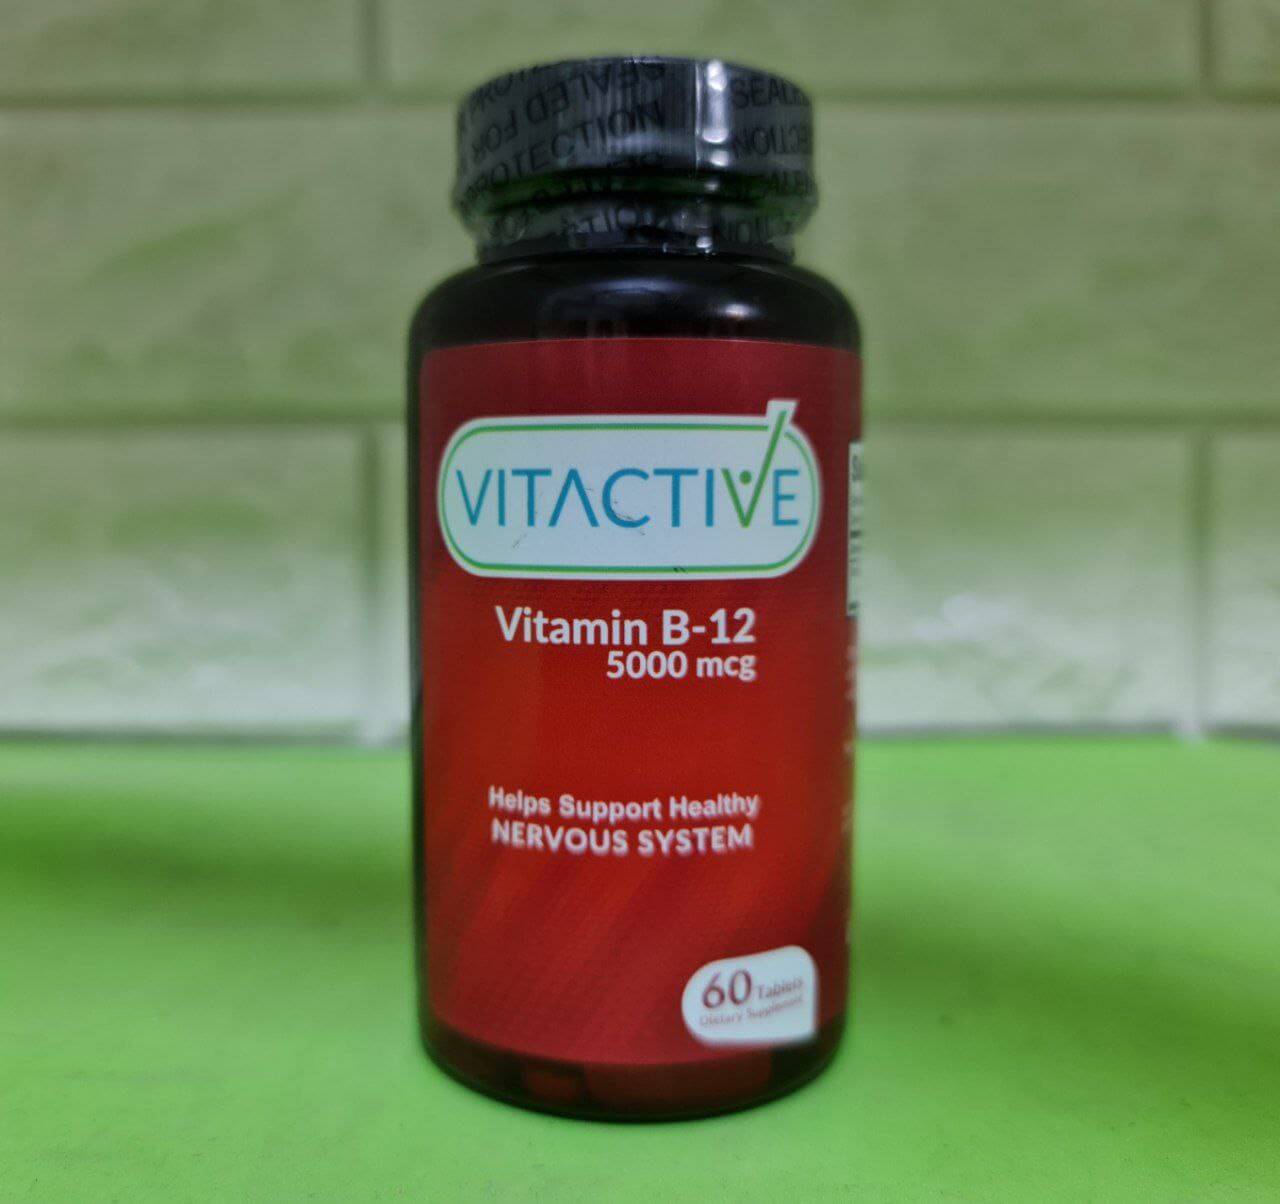 Vitactive Vitamin B12 5000 mcg